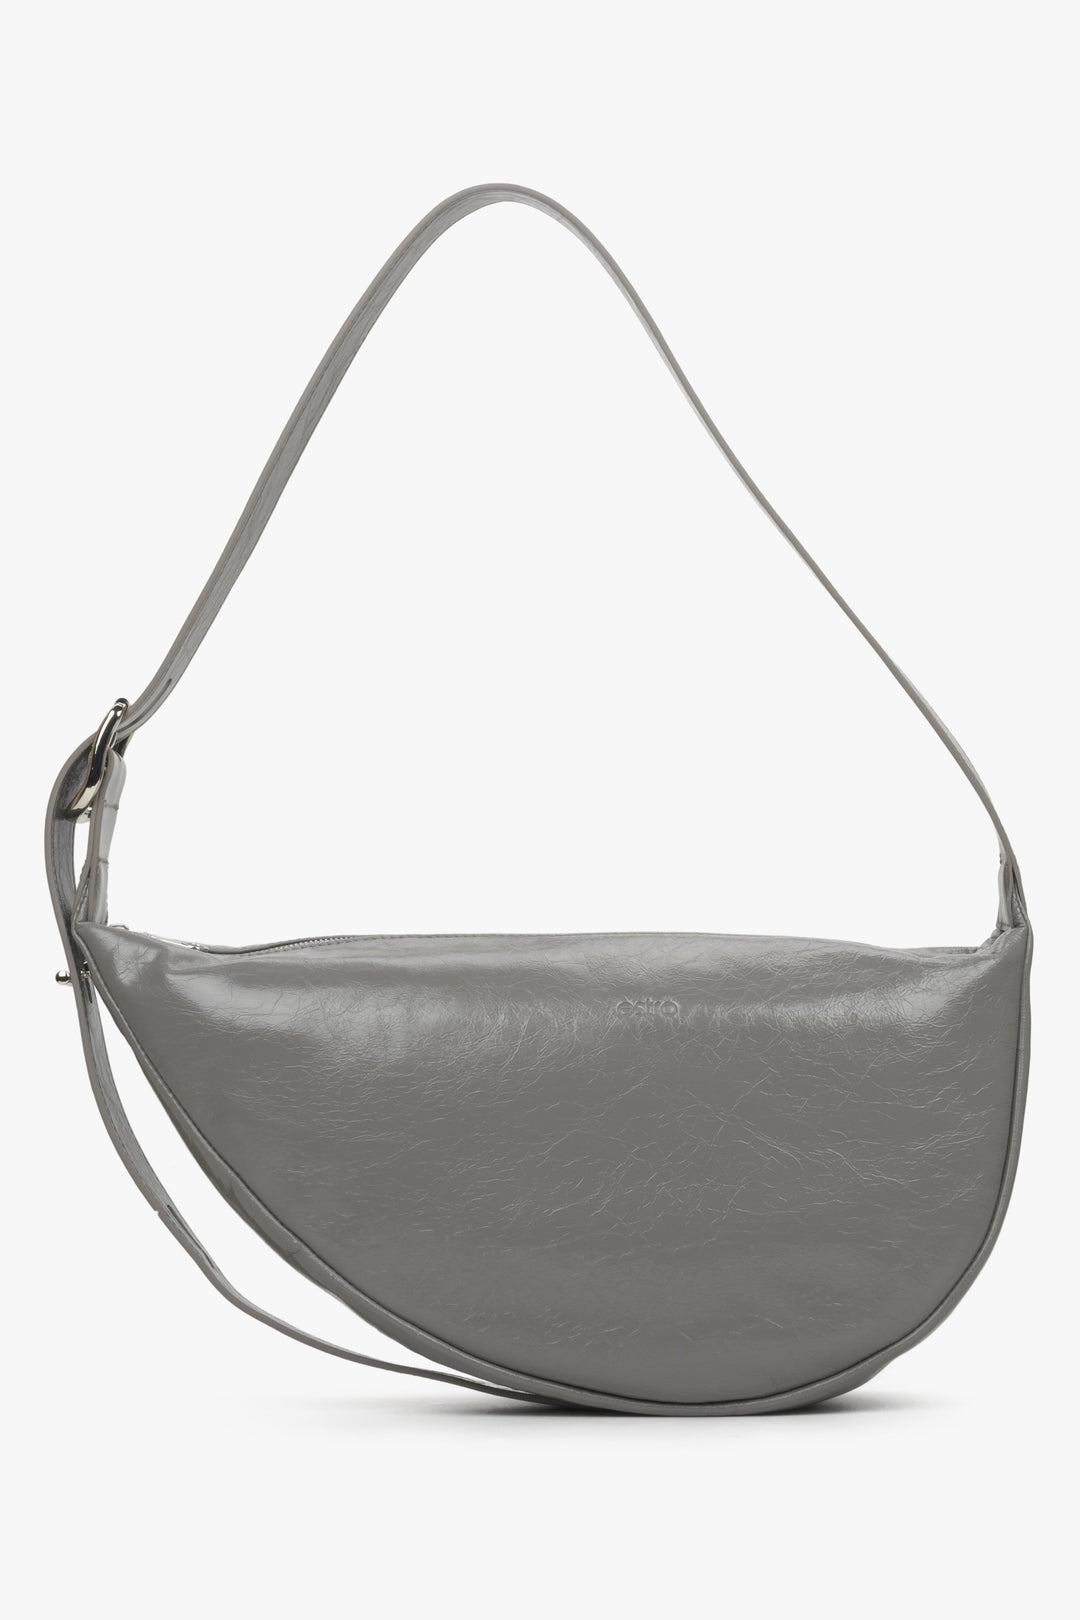 Women's grey leather Estro handbag.